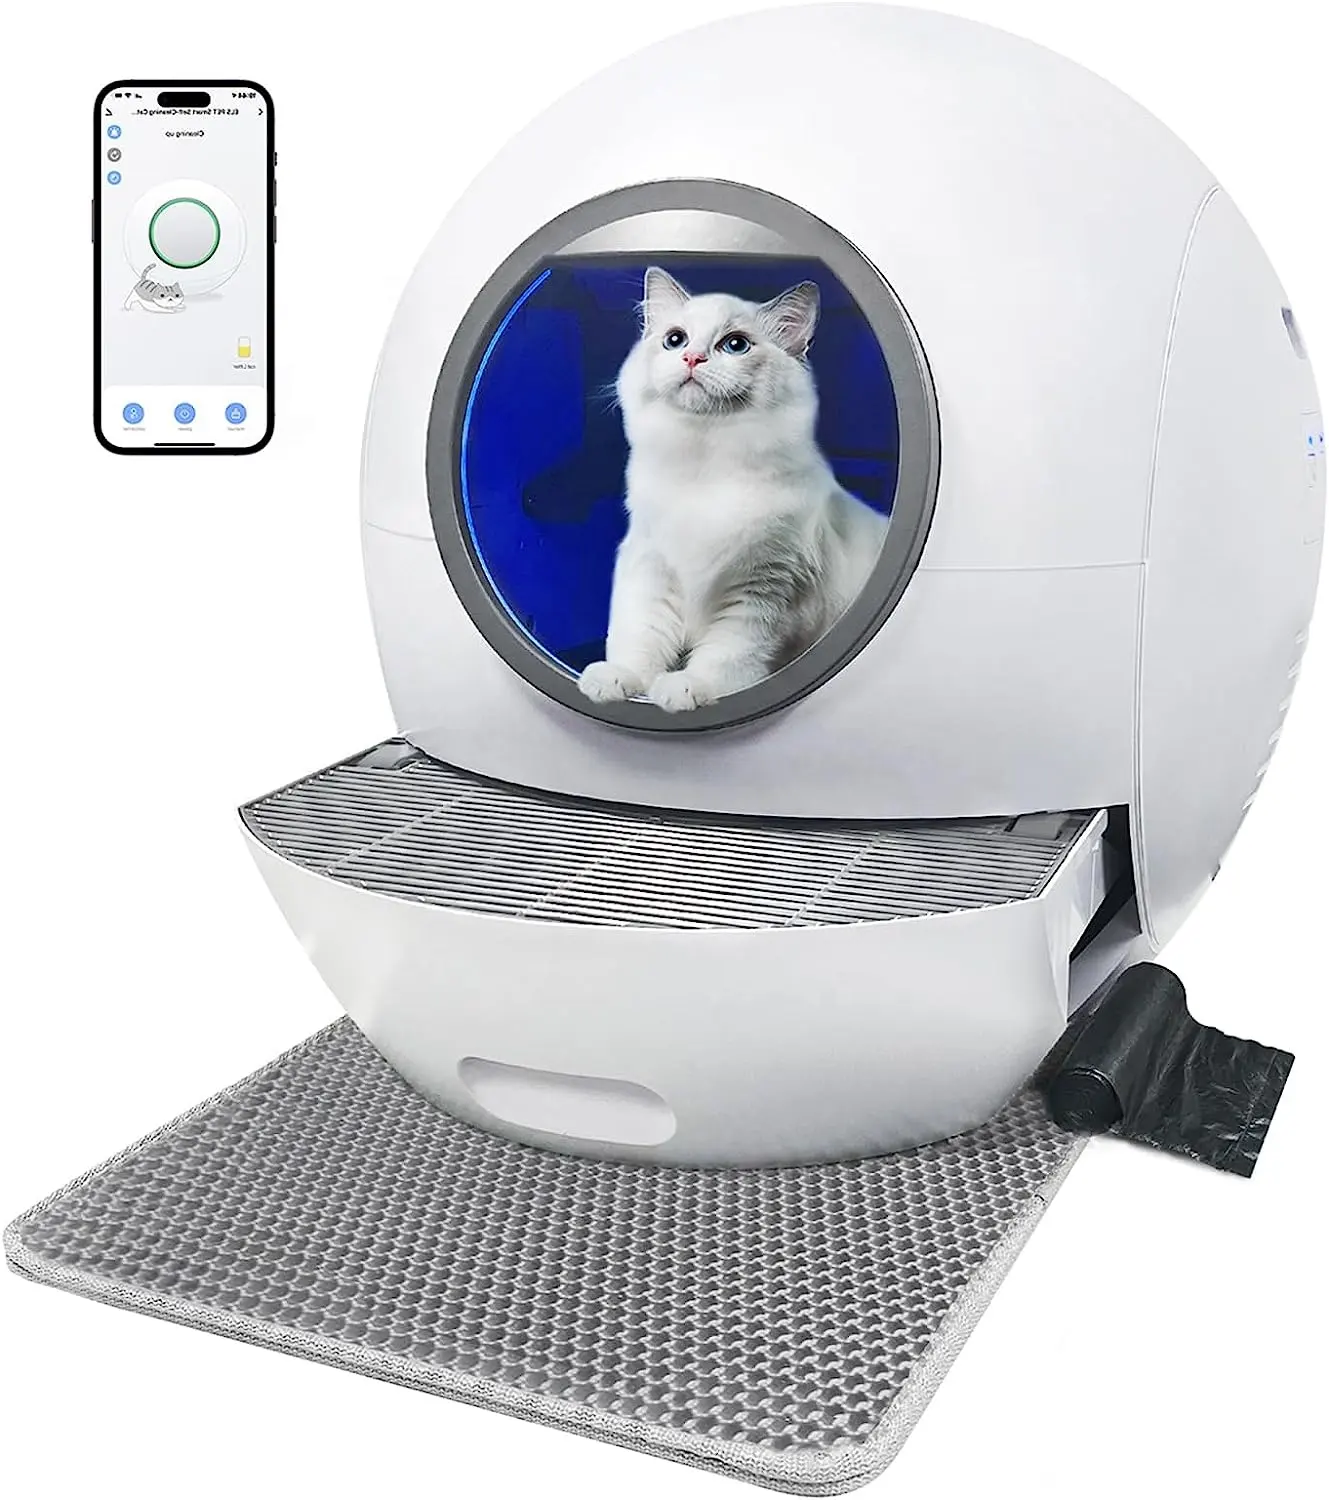 Bas prix usine grand automatique litière pour chat meubles de toilette auto intelligent intelligent auto nettoyage chat bac à litière